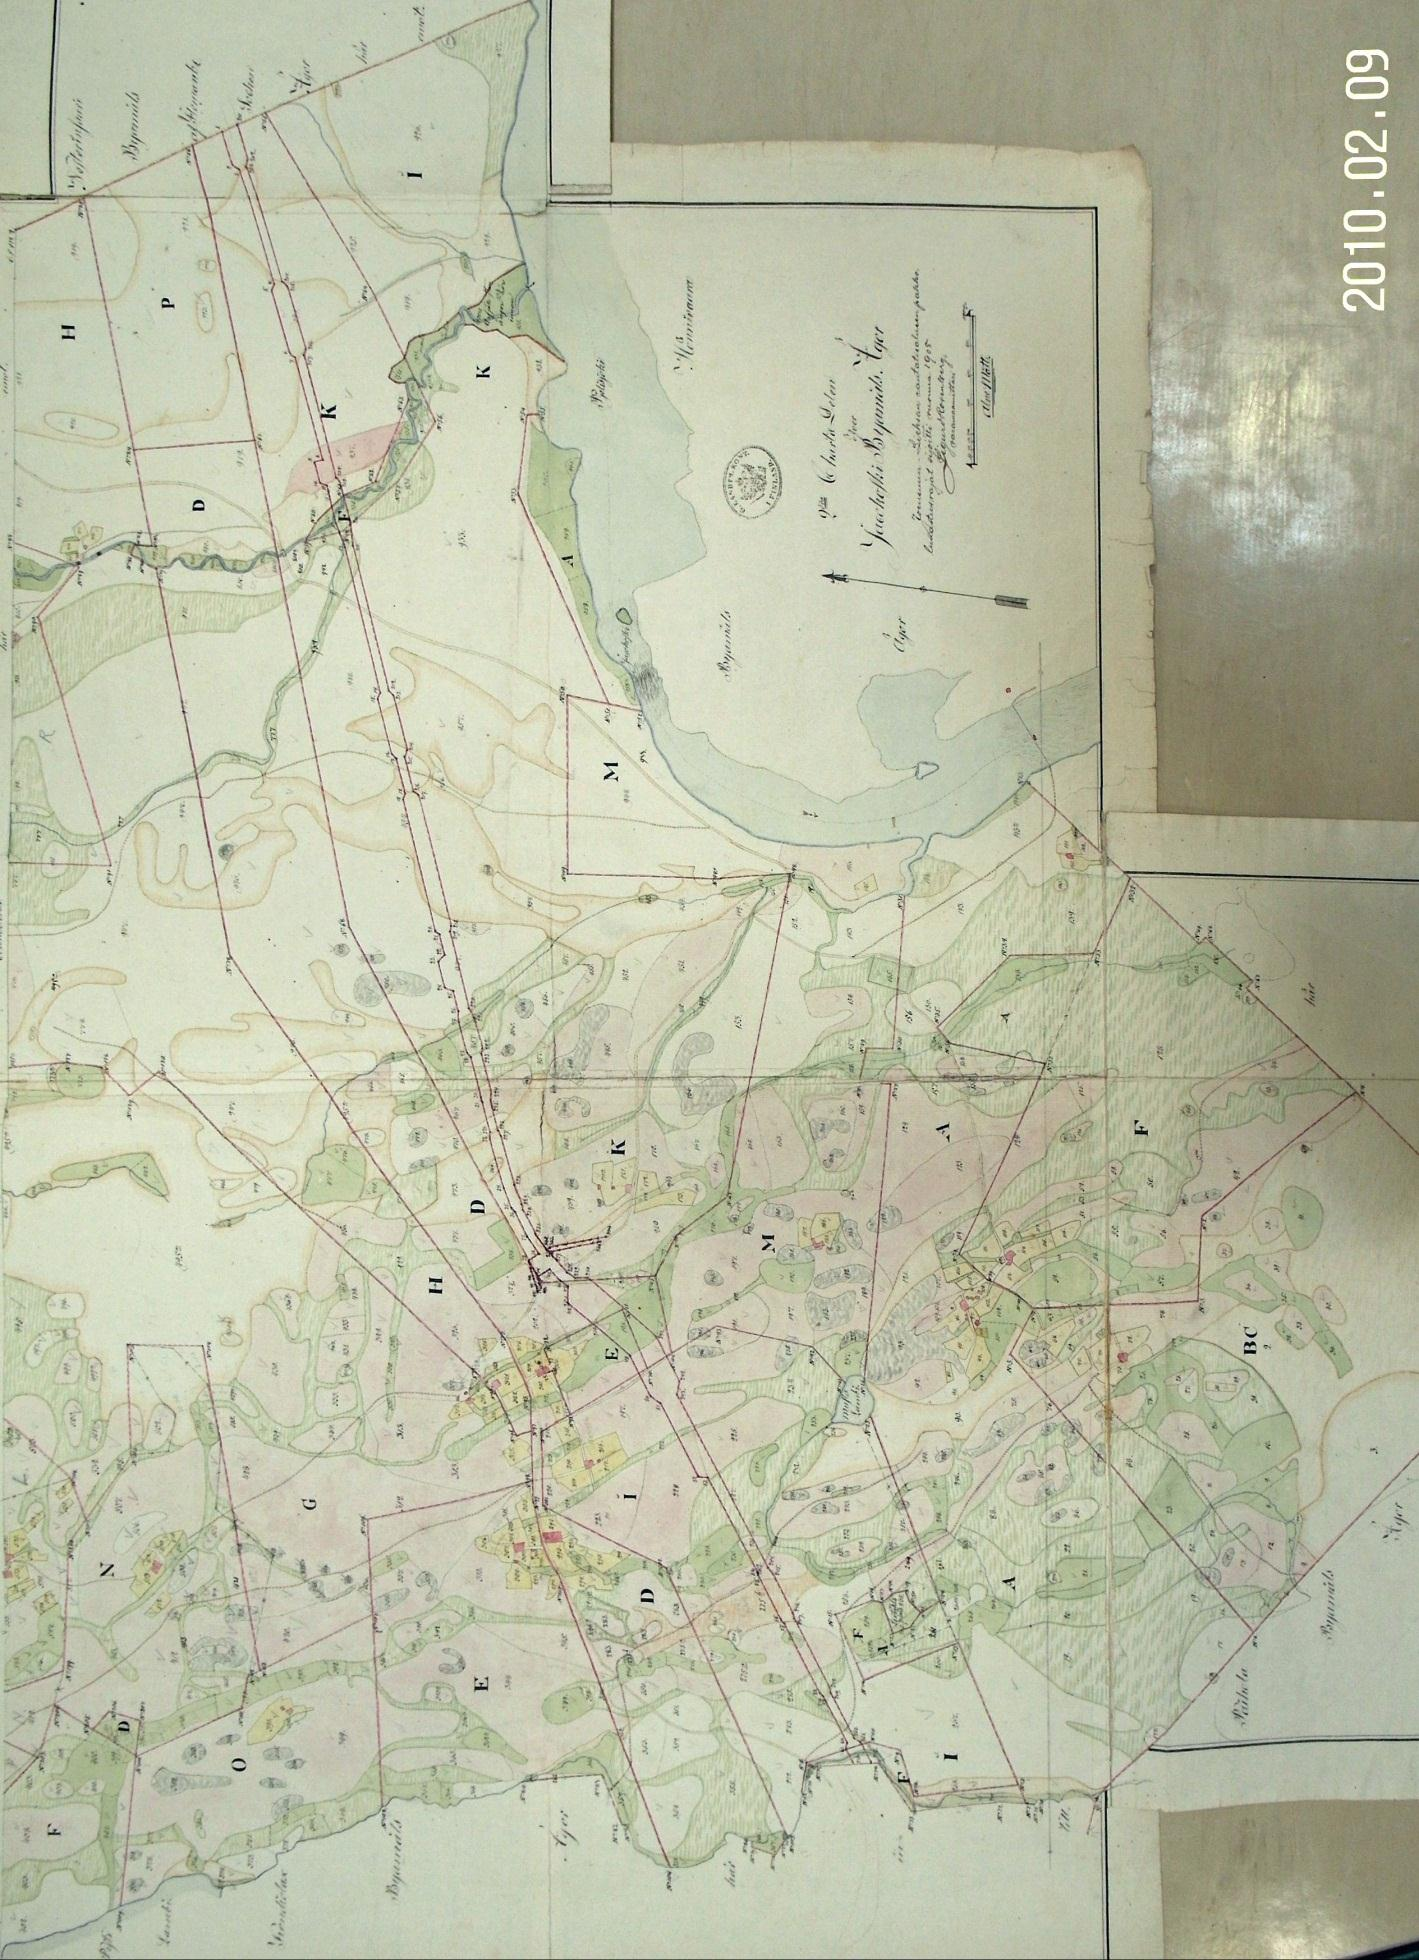 5 Vanhat kartat Ote Jakokosken kartasta 1839 (signum D40-2) (kuvan päiväyksen vuosi on virheellinen, kuvattu 2012) Aluetta